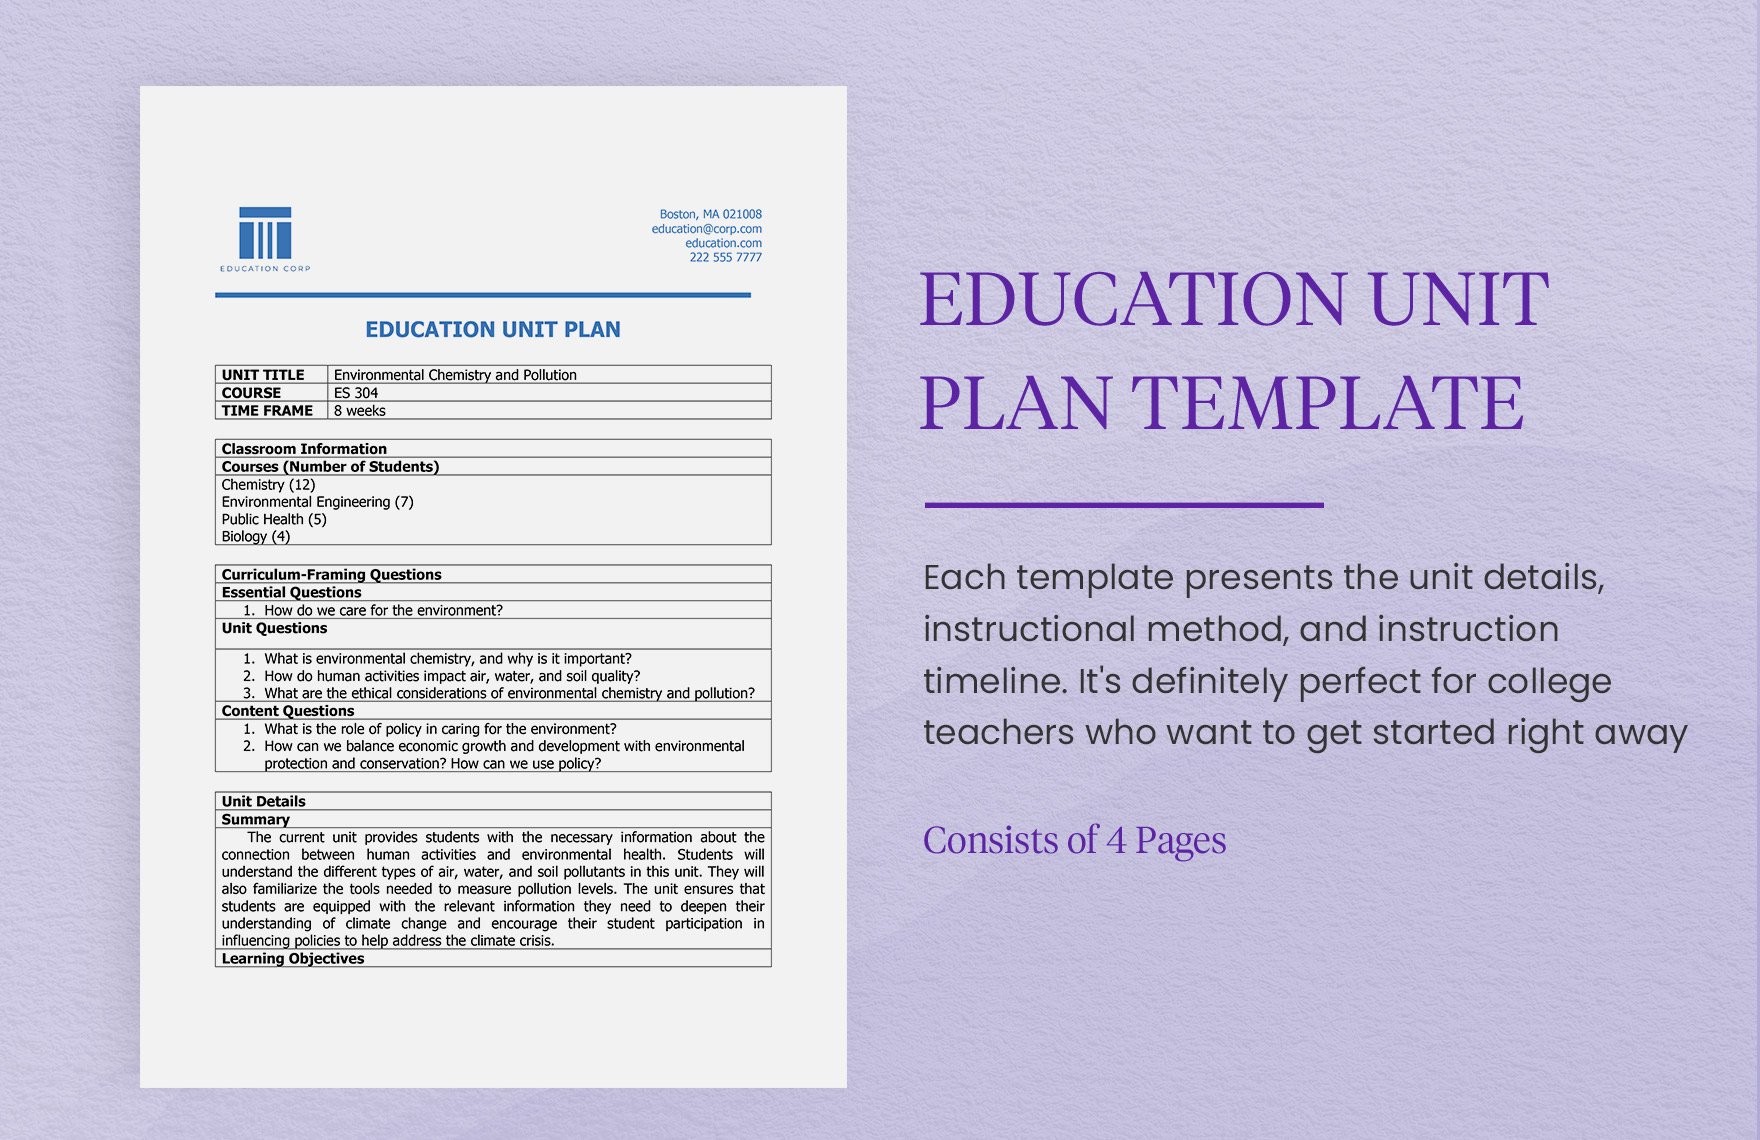 Education Unit Plan Template